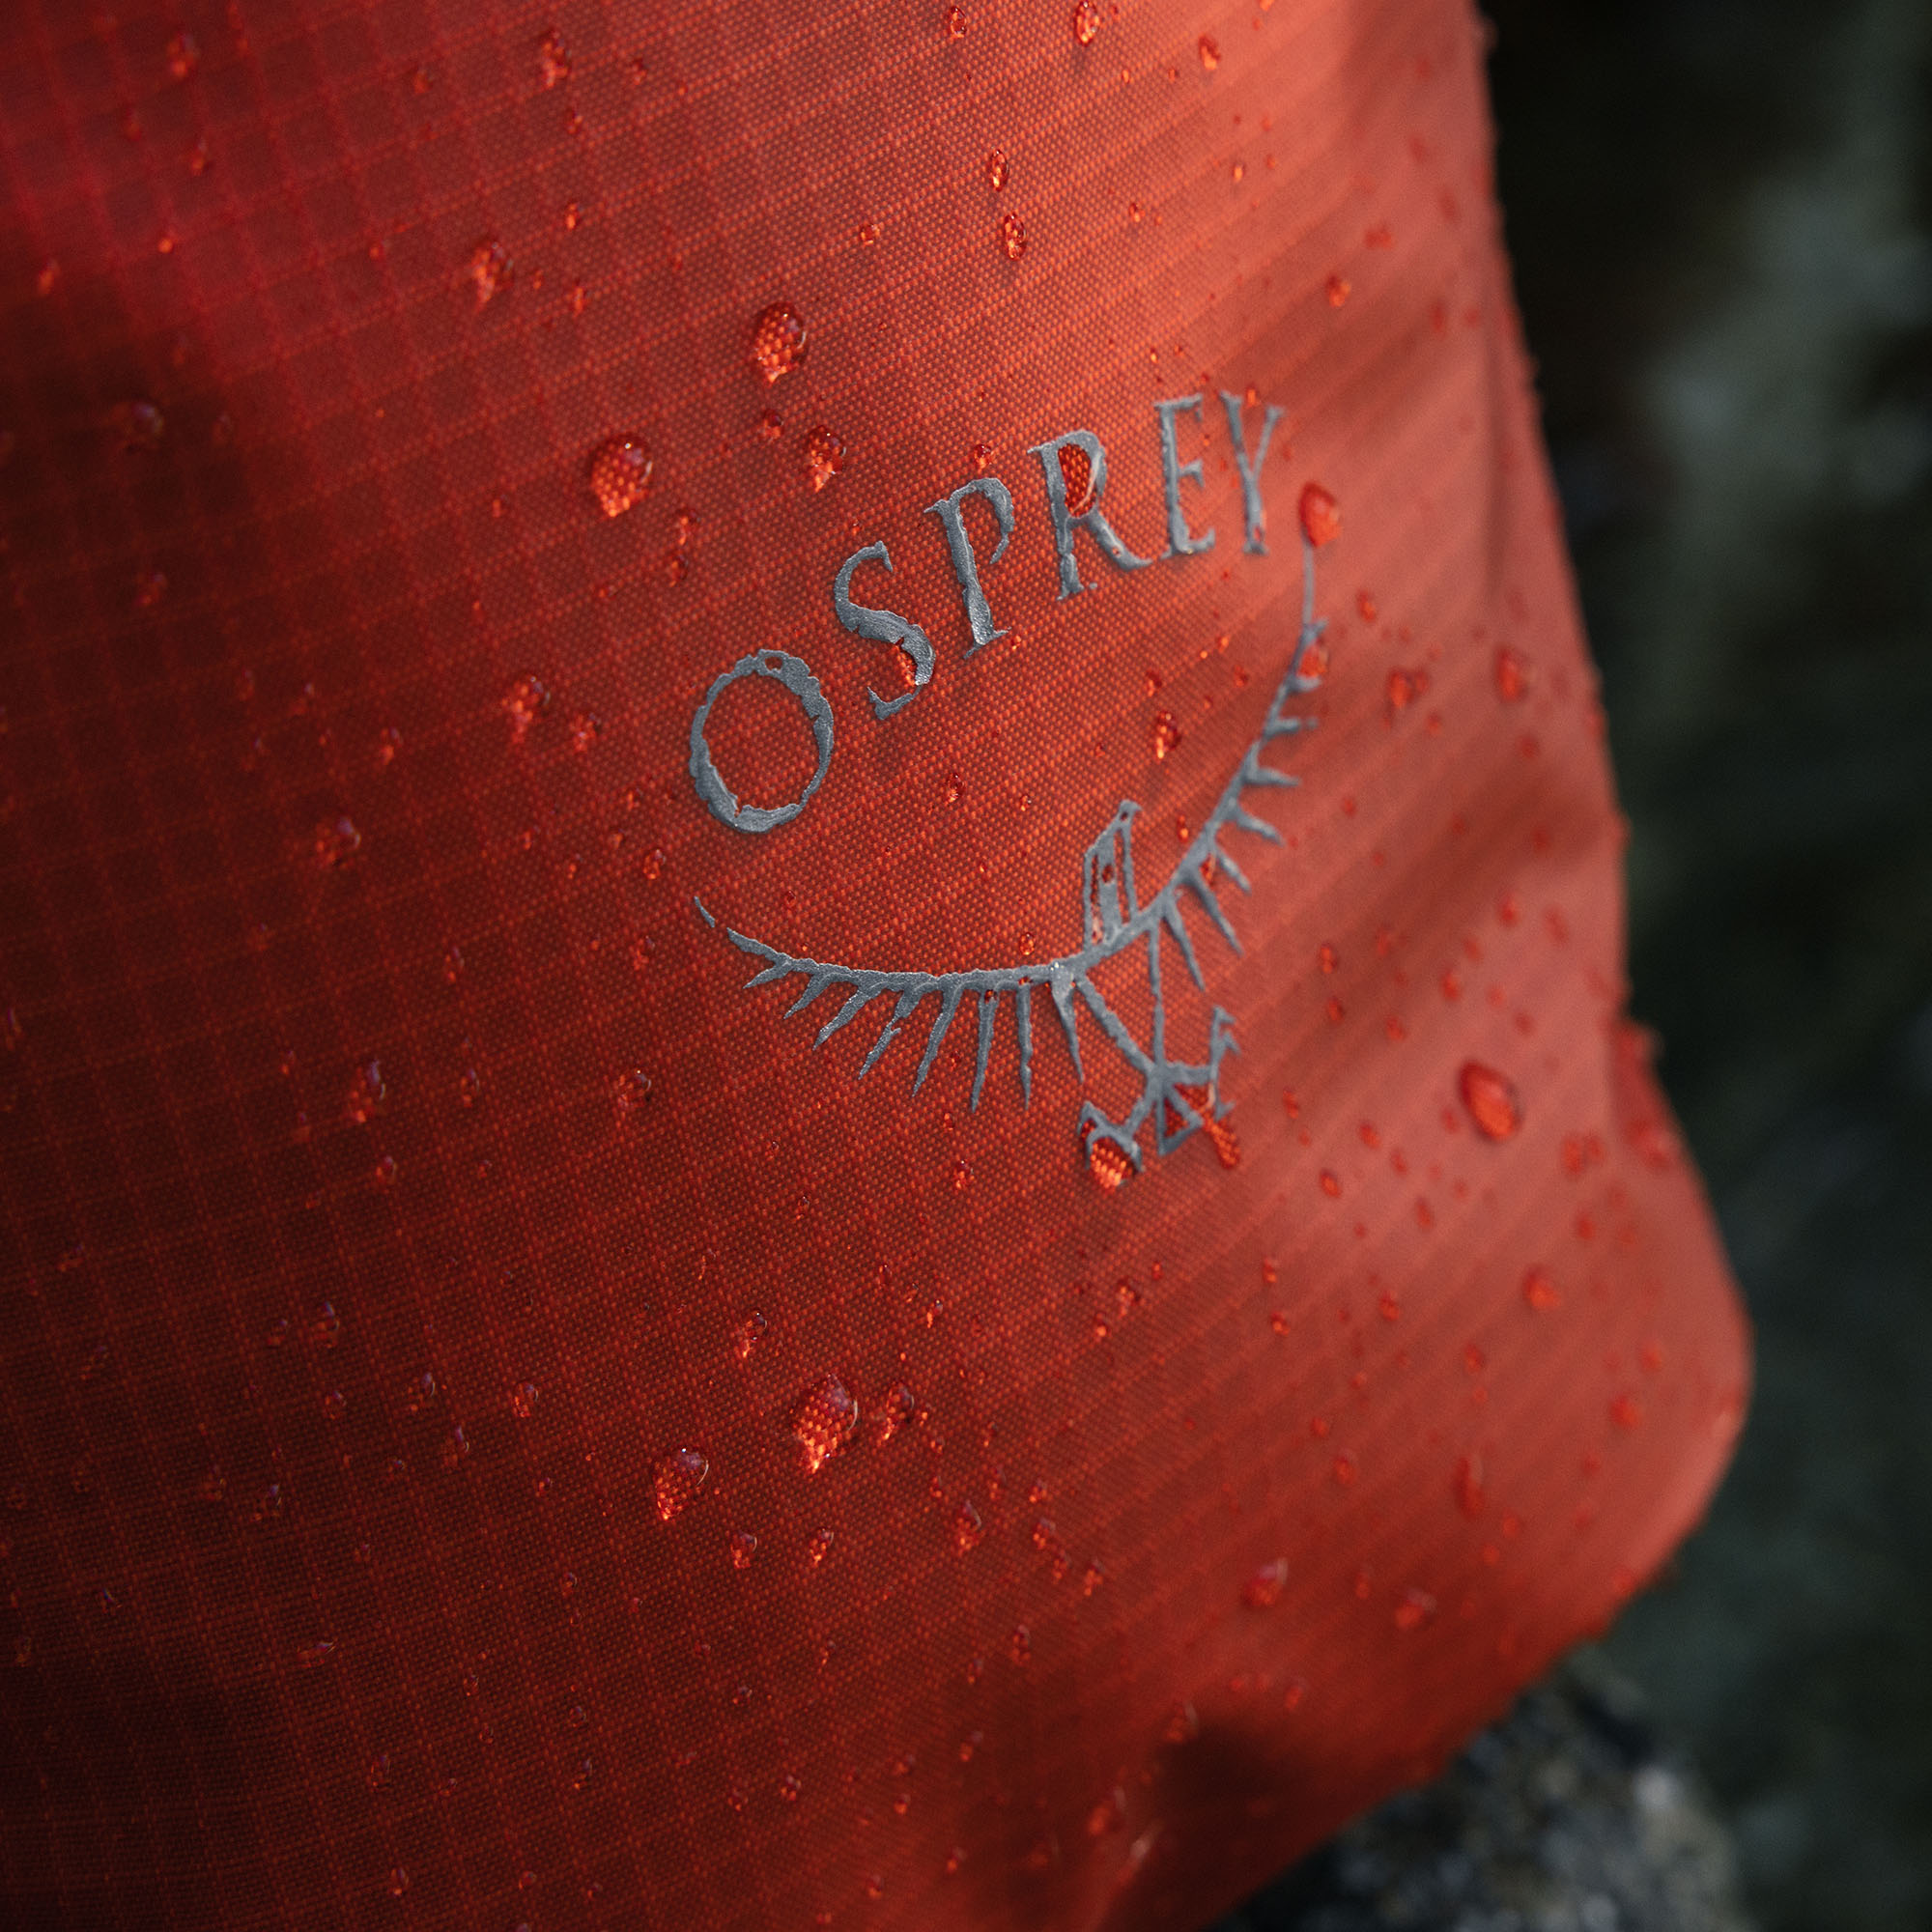 Osprey Wildwater 50 Waterproof Dry Bag